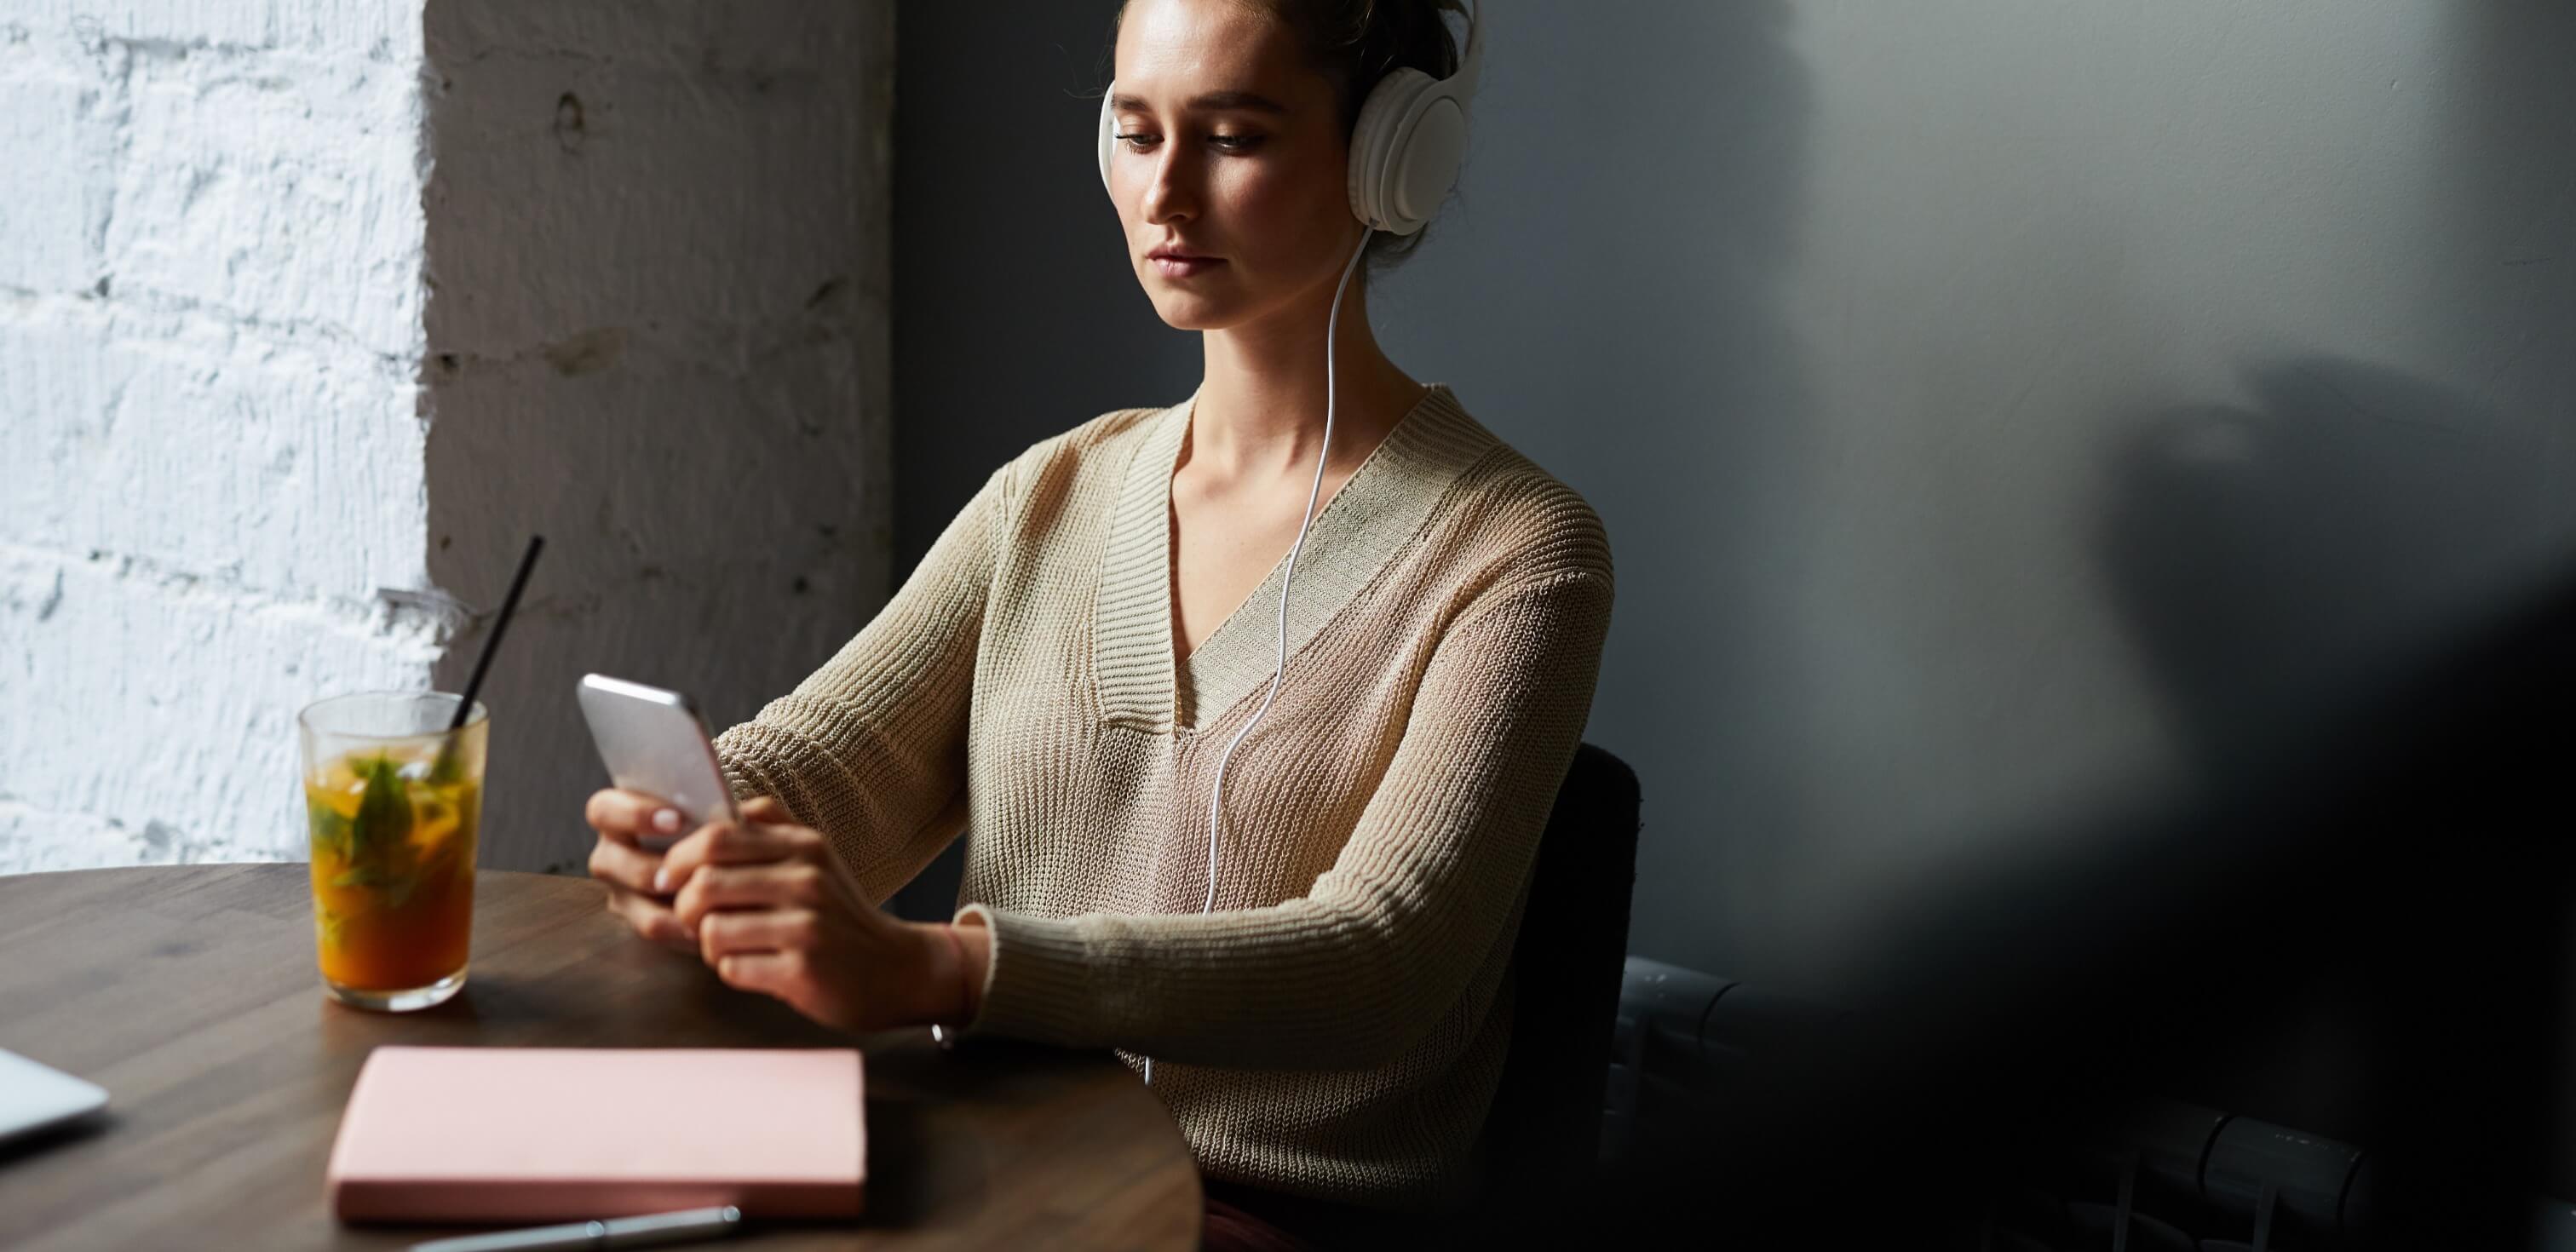 Fotografia de uma mulher sentada à mesa ouvindo podcasts para estudar com fones de ouvido em seu celular.